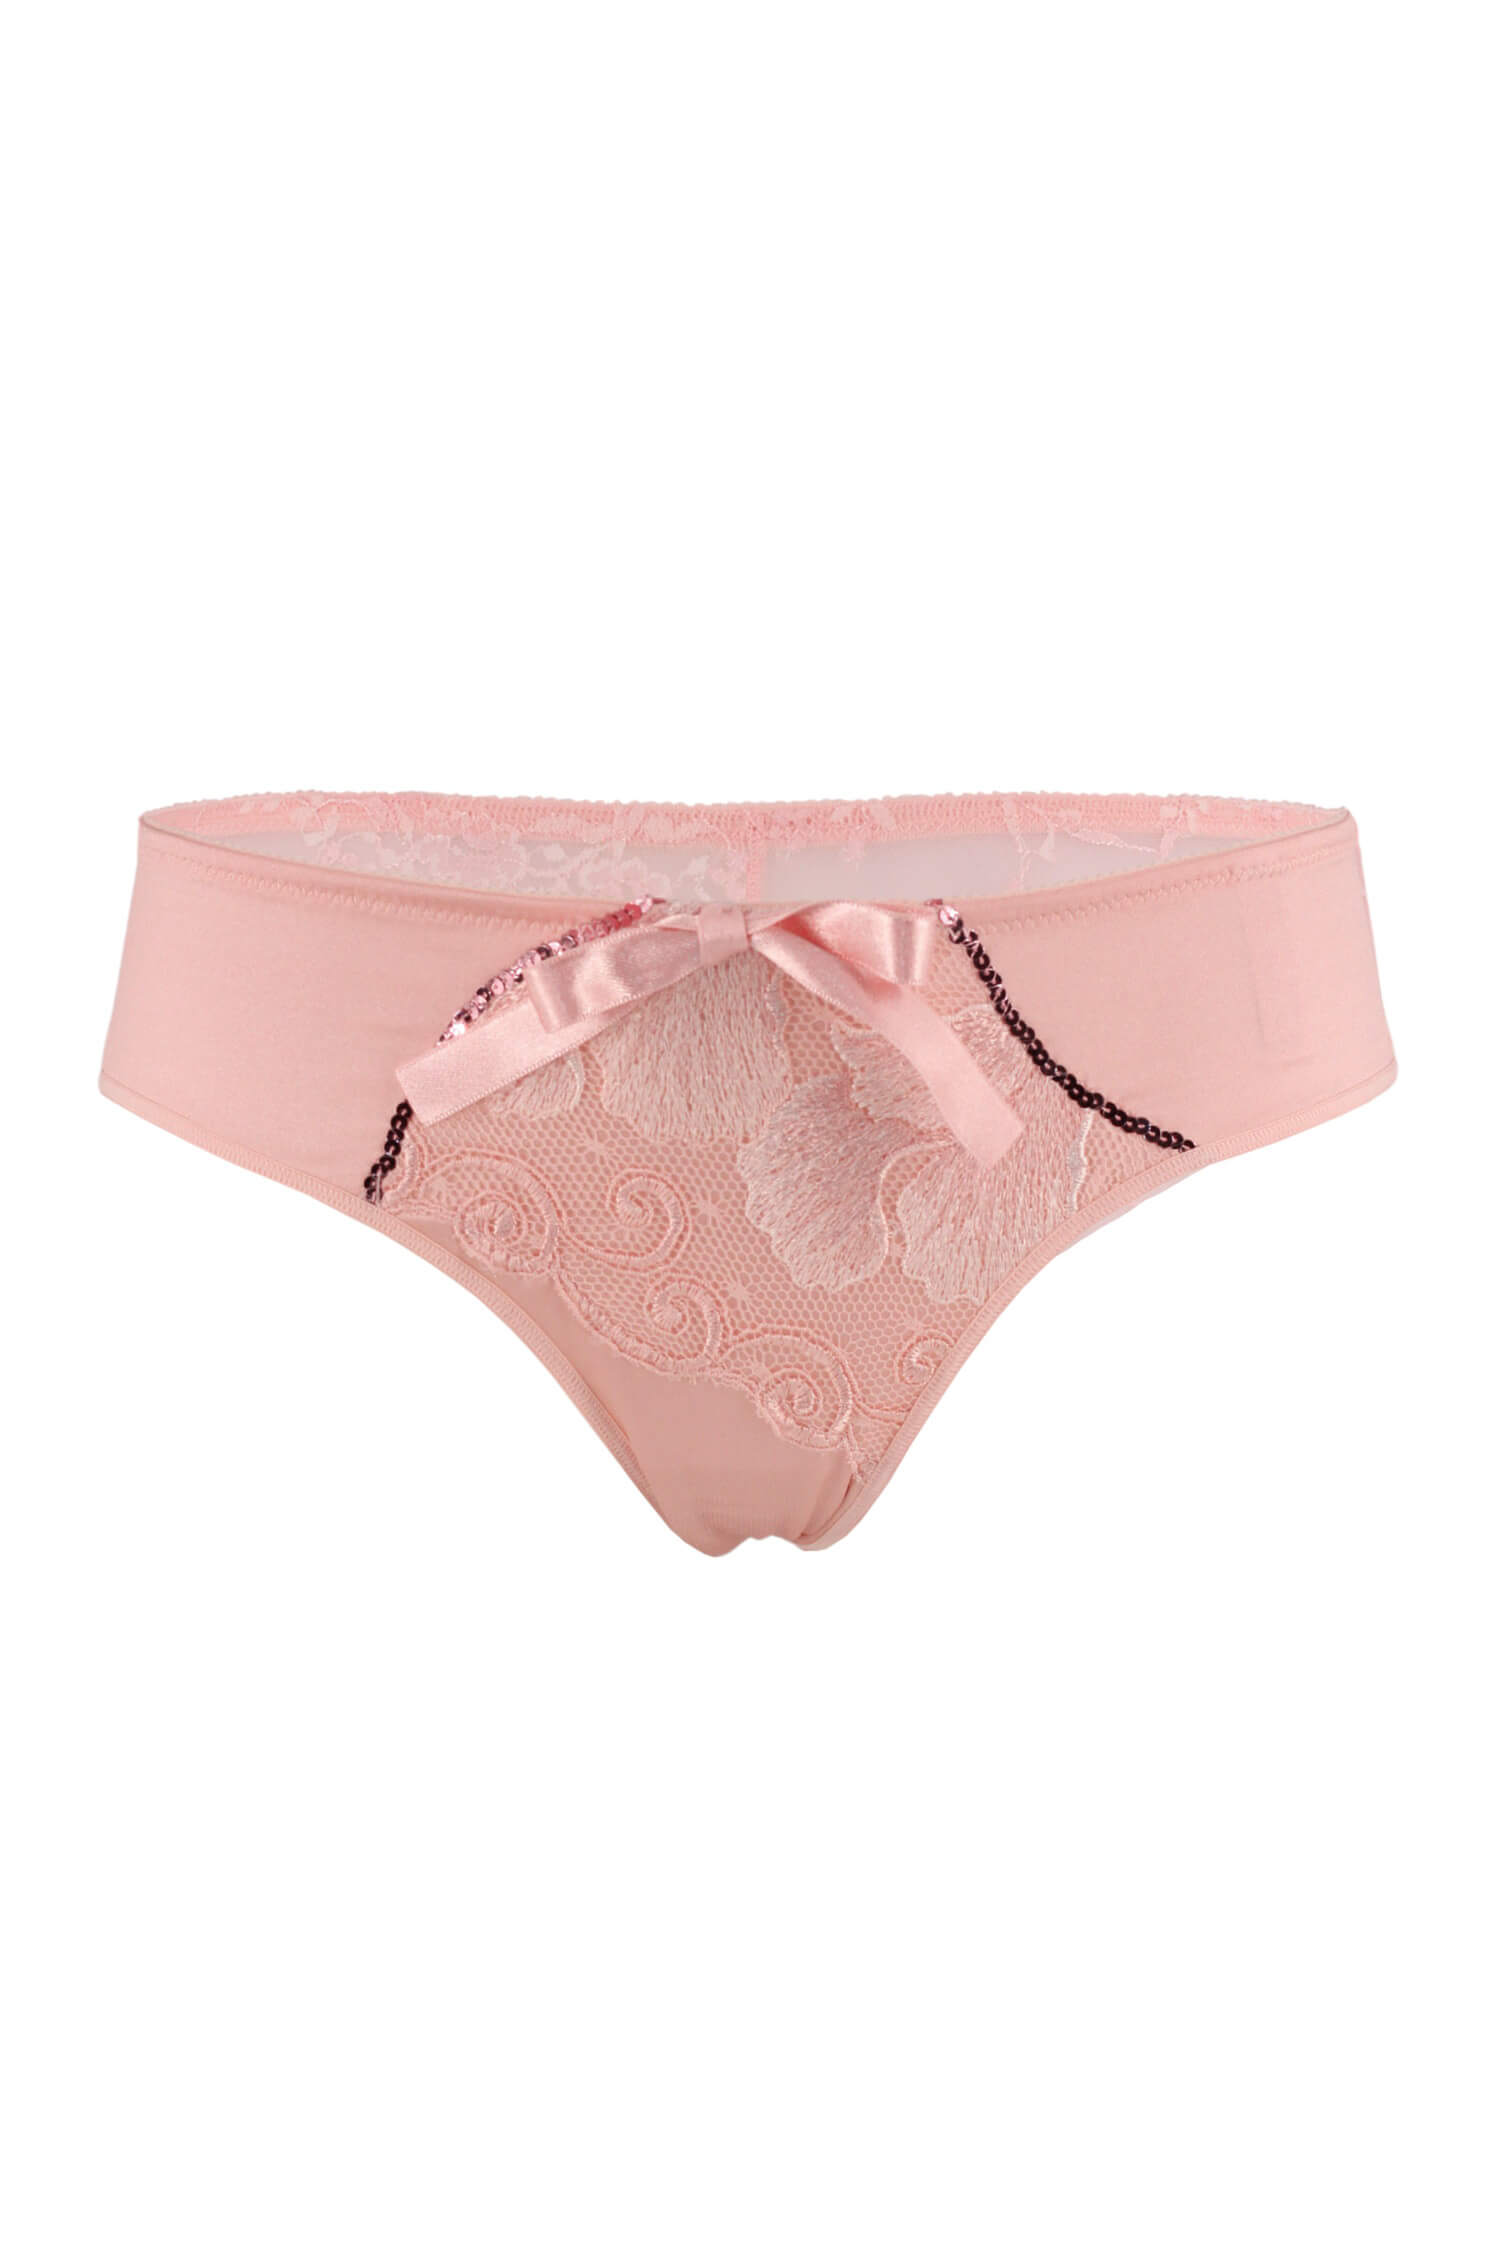 Charlota krajkové kalhotky s mašlí růžová L